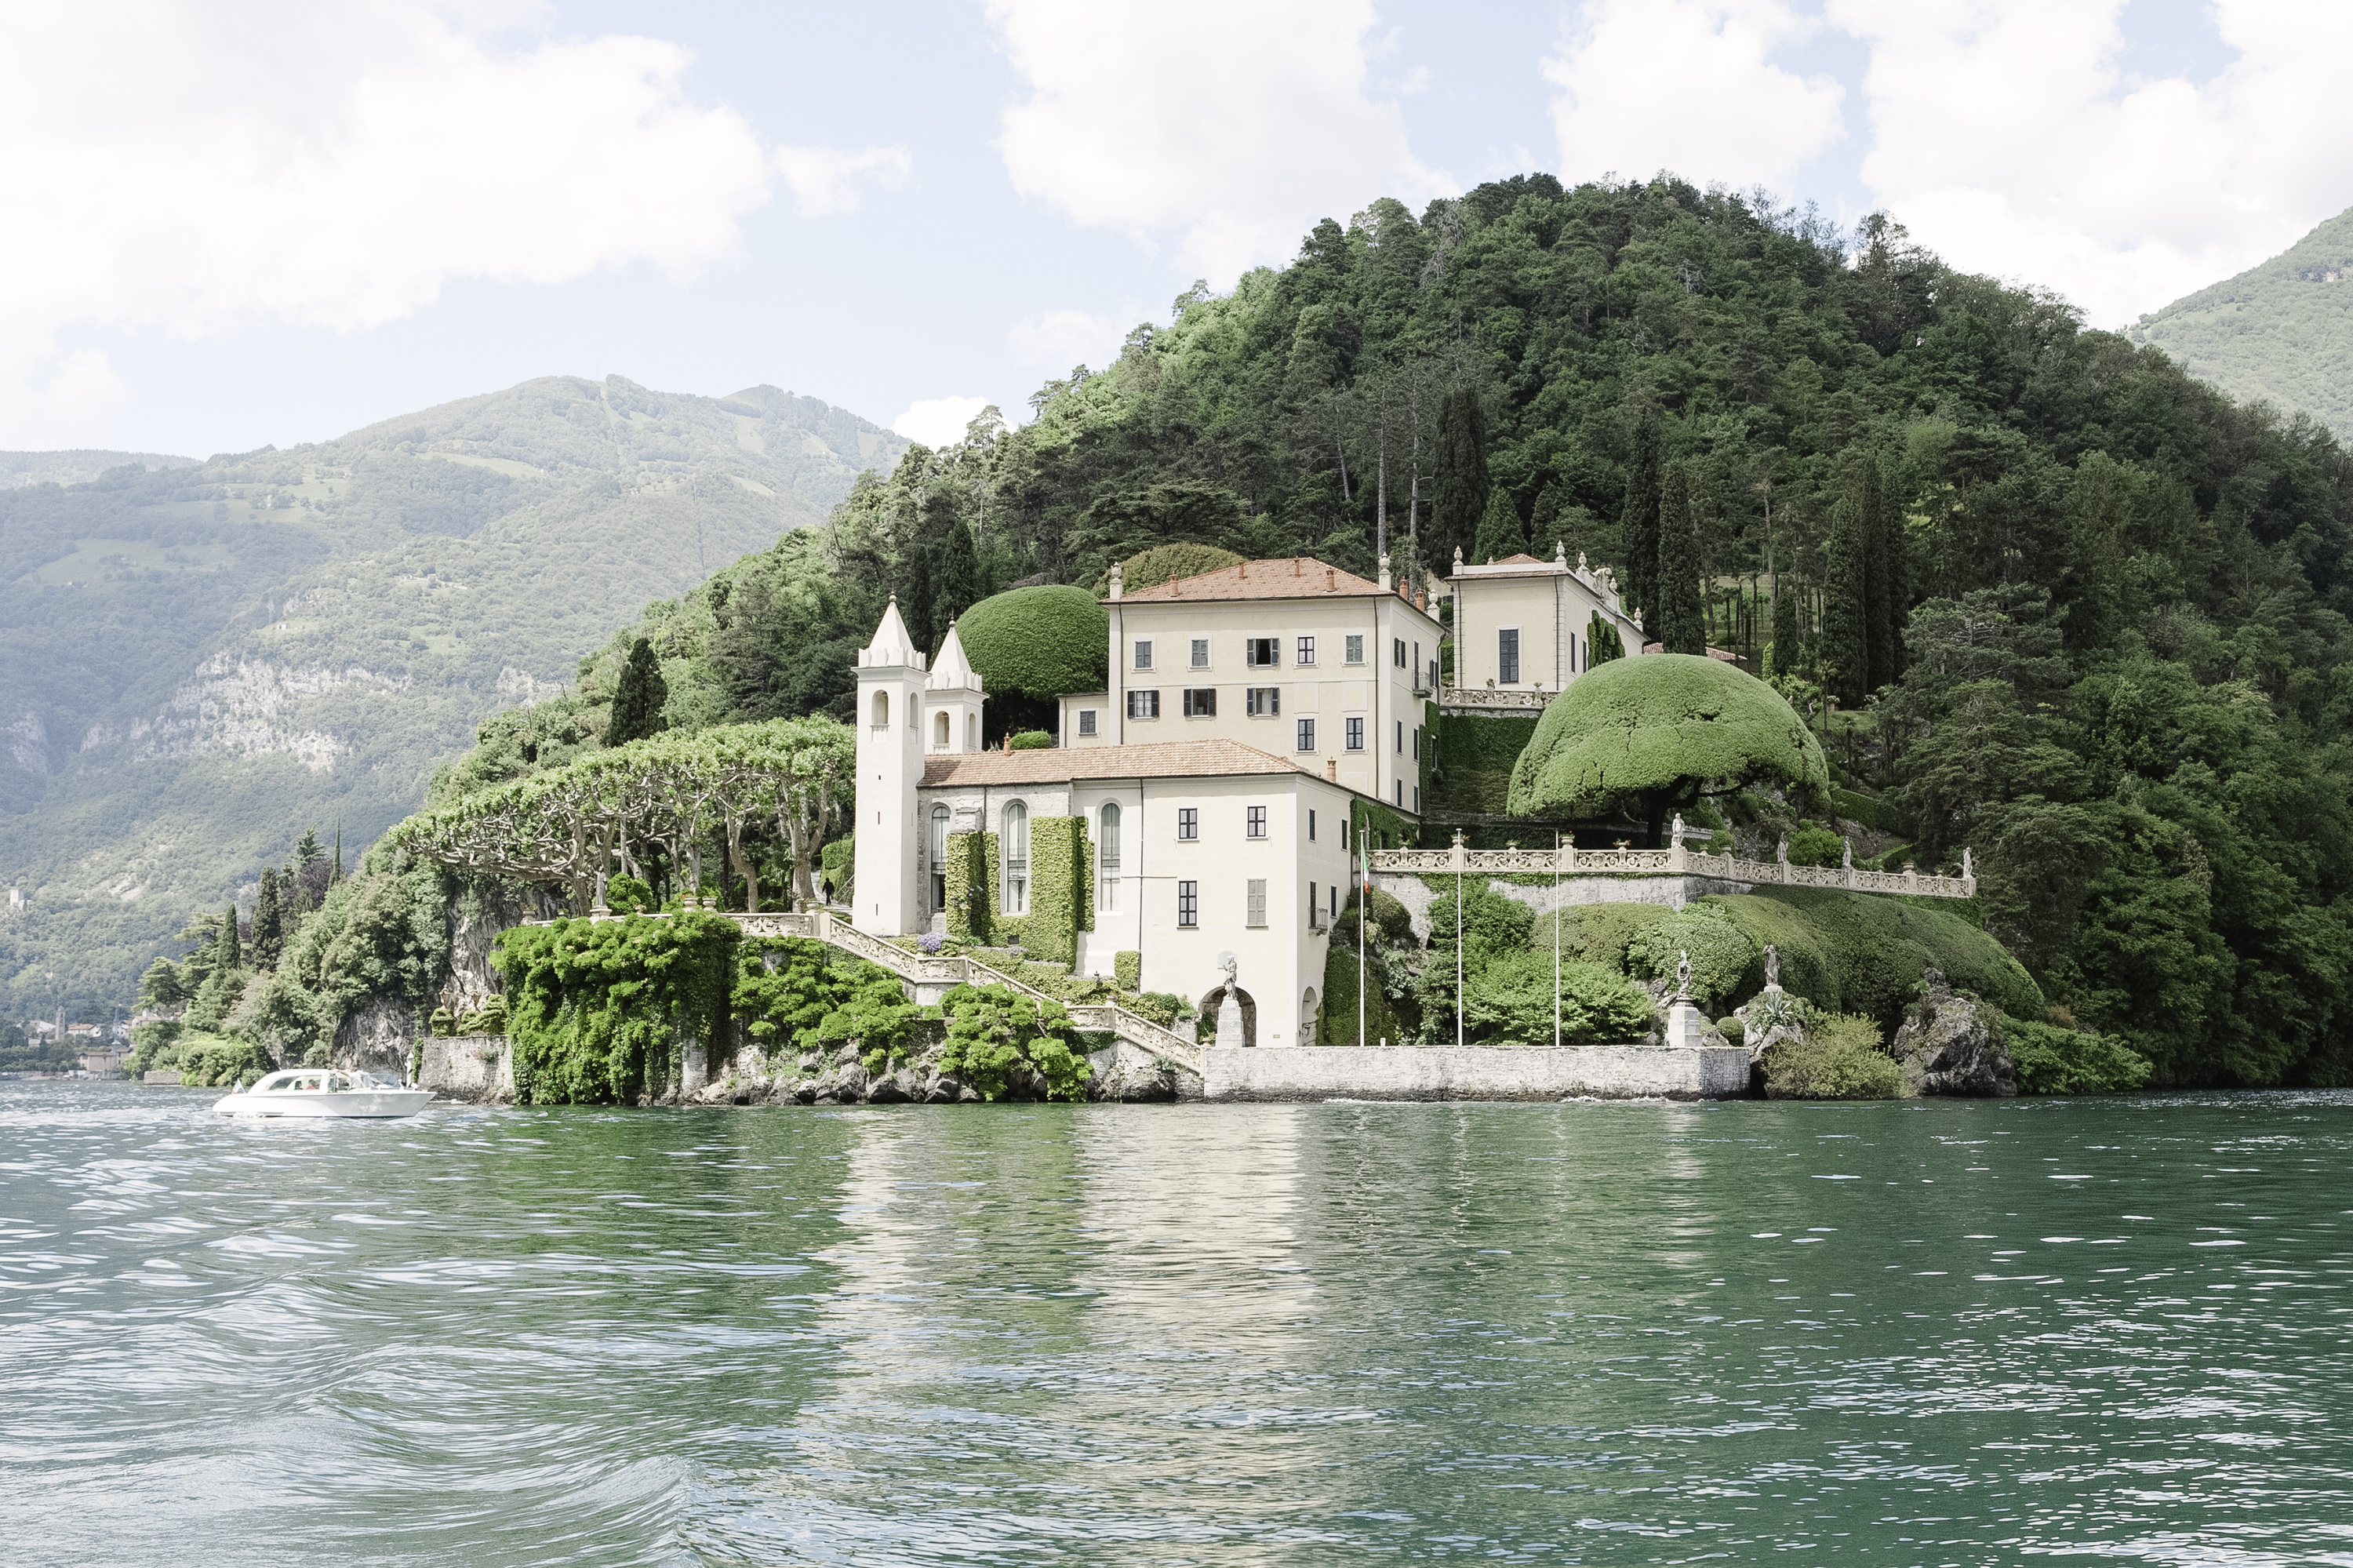 Villa del Balbianello for civil weddings on Lake Como